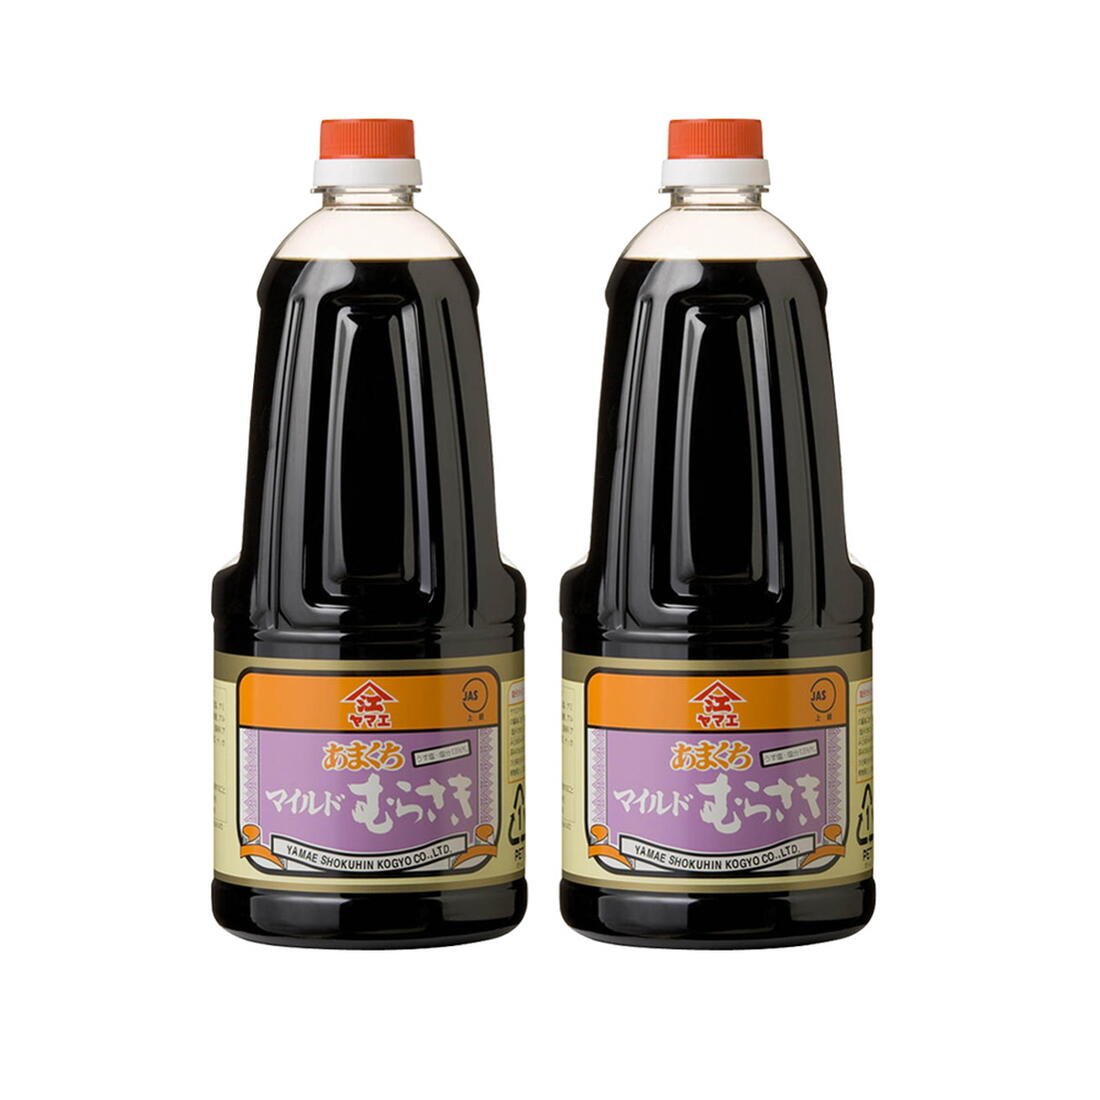 [ヤマエ食品] 醤油 マイルド紫 しょうゆ 1500ml×2本セット /宮崎 醤油 甘い しょうゆ たれ 万能 味噌 みそ 麦